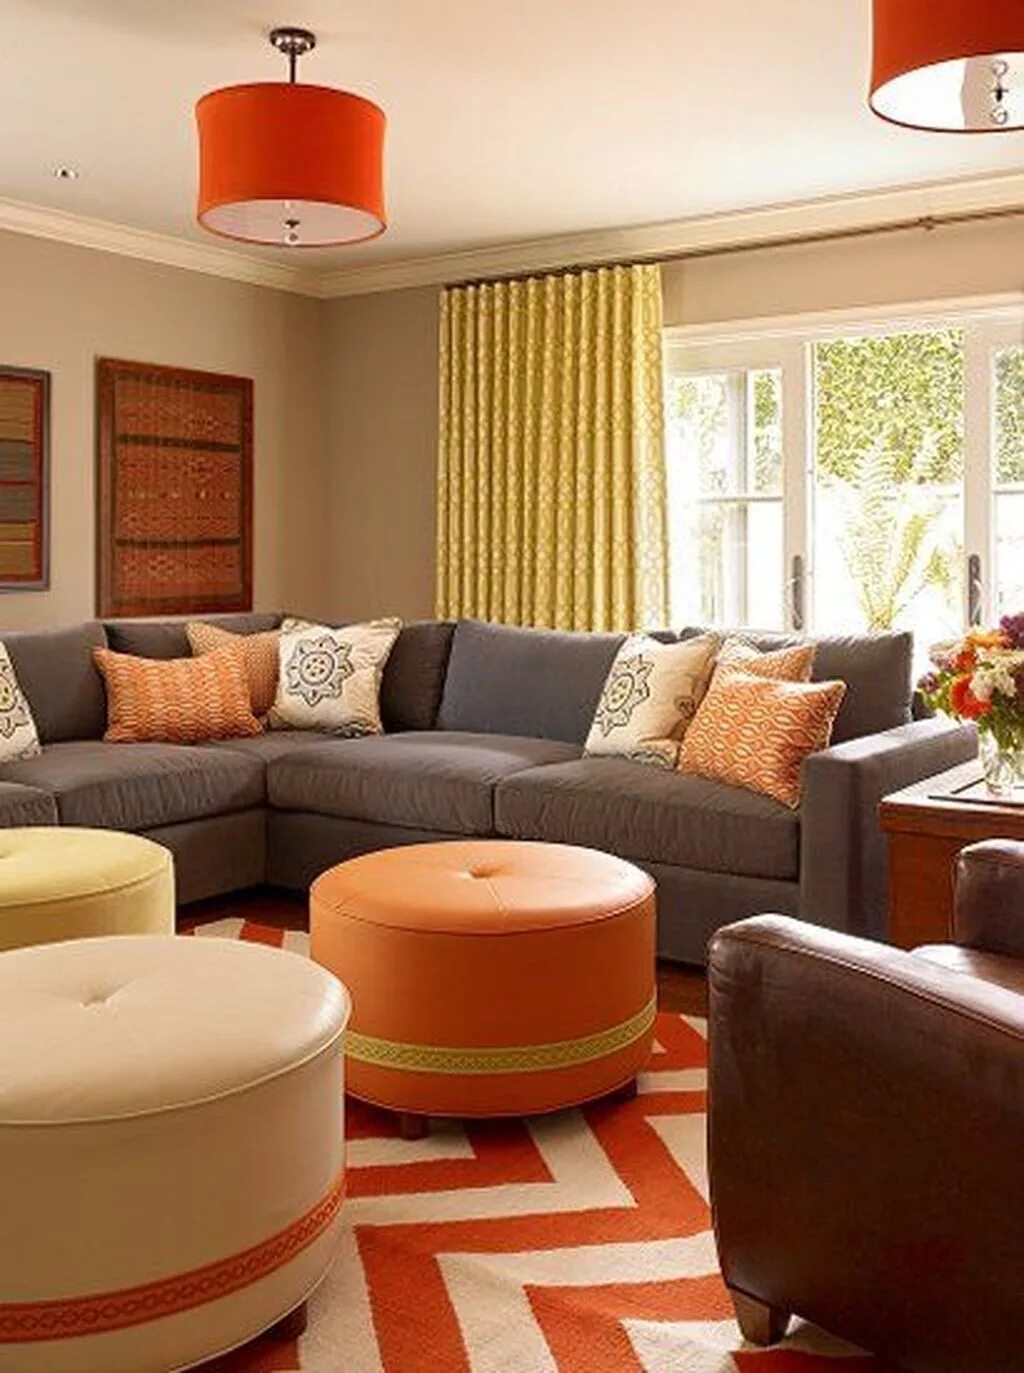 Цвет диванов в интерьере гостиной. Цветовая гамма для гостиной. Гостиная интерьер. Гостиная в теплых тонах. Цветовые решения в интерьере гостиной.